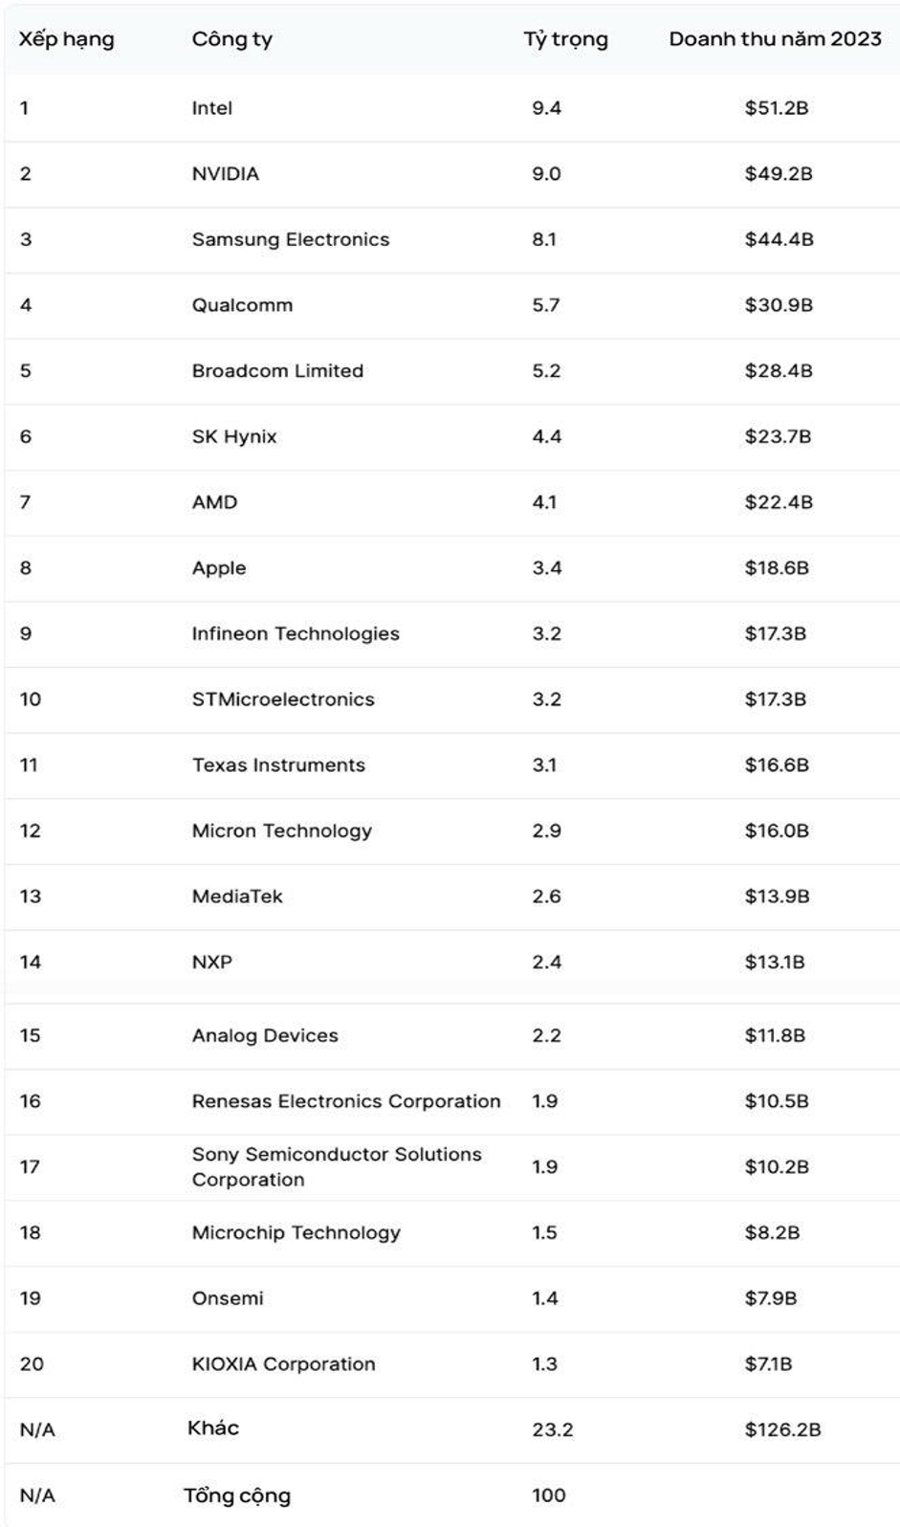 Xếp hạng các công ty sản xuất chip bán dẫn: "Ông lớn" Nvidia vẫn đứng thứ 2 - Ảnh 2